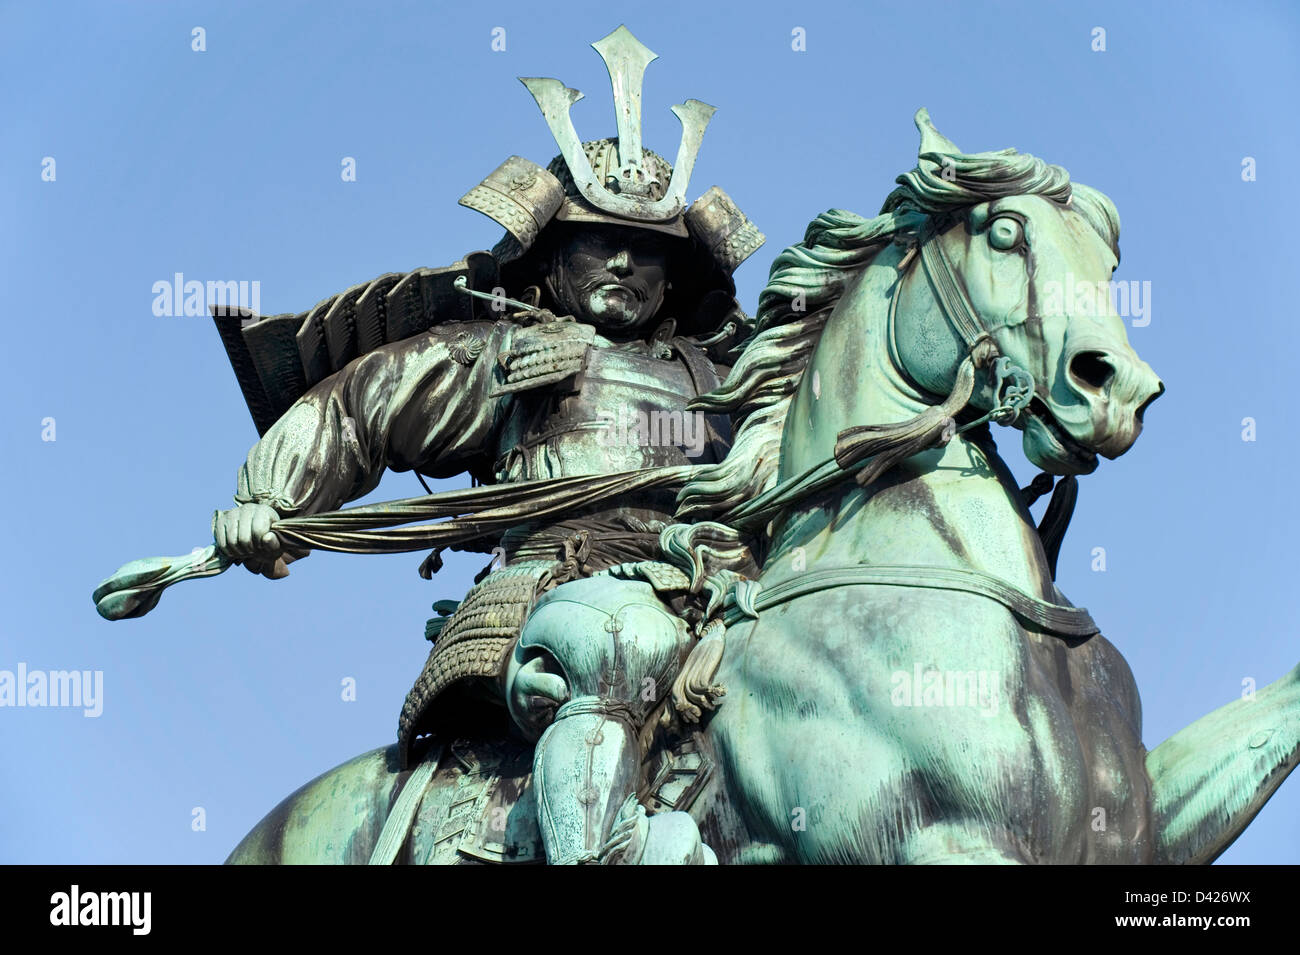 Statua di bronzo di Kusunoki Masashige, xiv secolo Samurai Warrior, a cavallo nel Parco Kokyogaien vicino al palazzo imperiale di Tokyo. Foto Stock